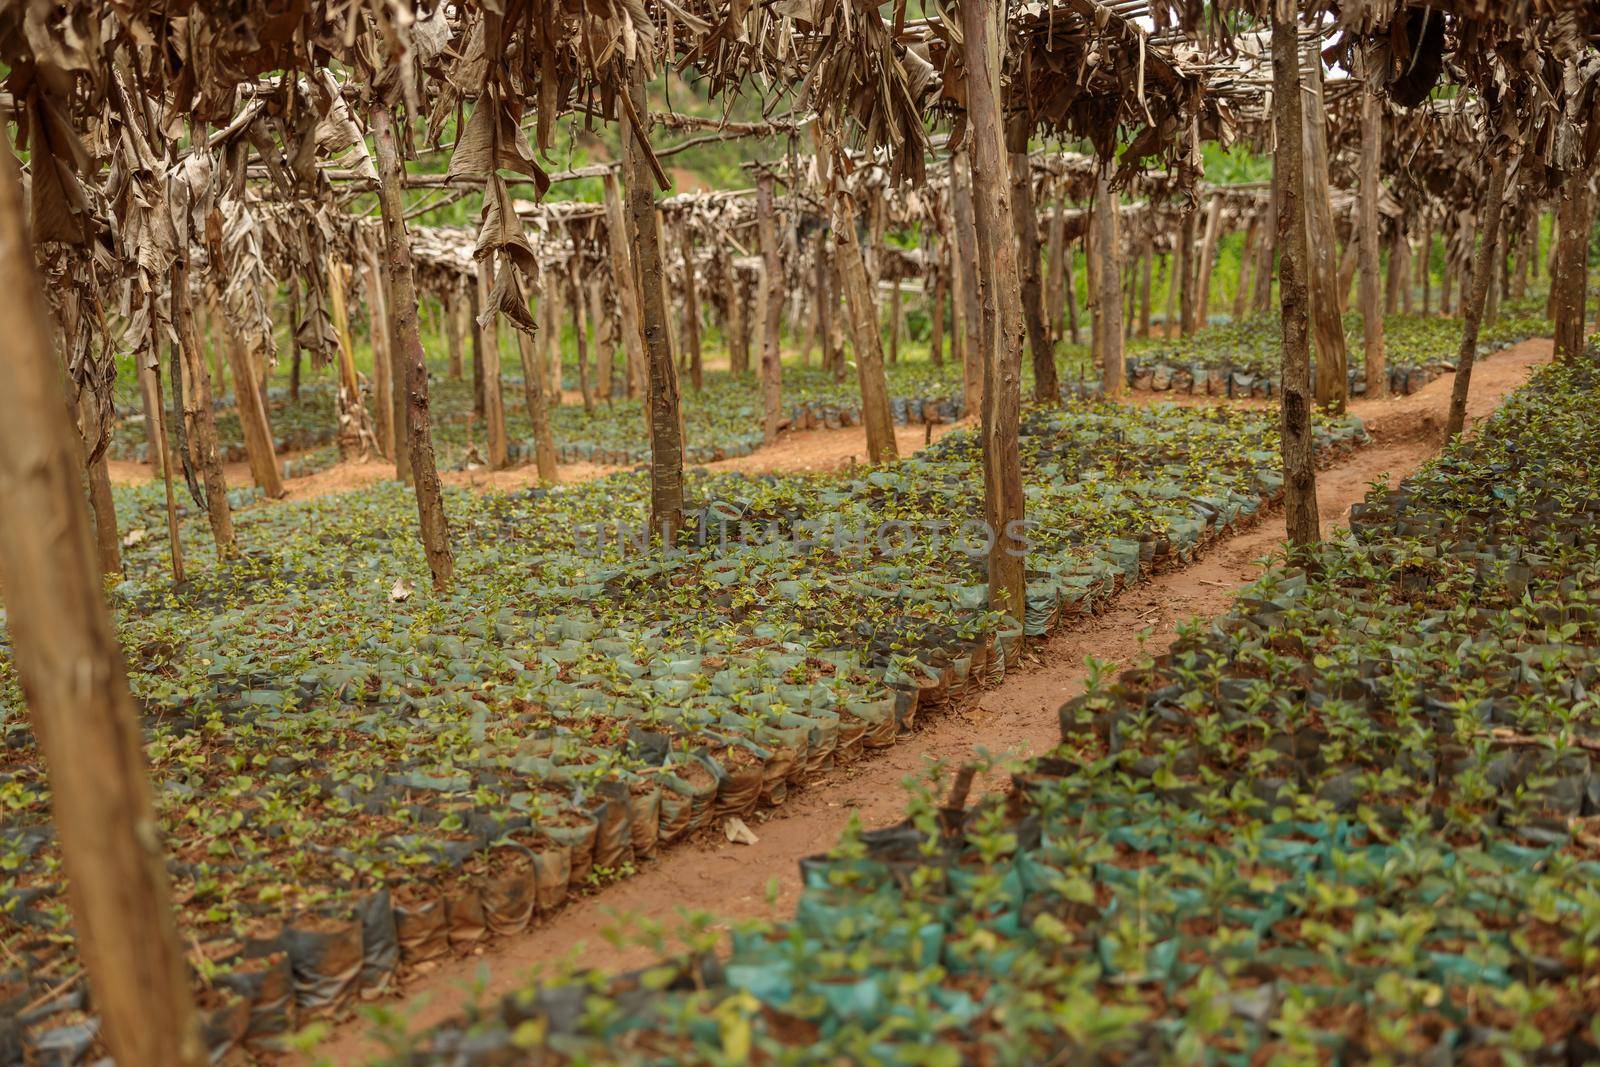 Young coffee Arabica plants on a farm in rural region, South America by Yaroslav_astakhov